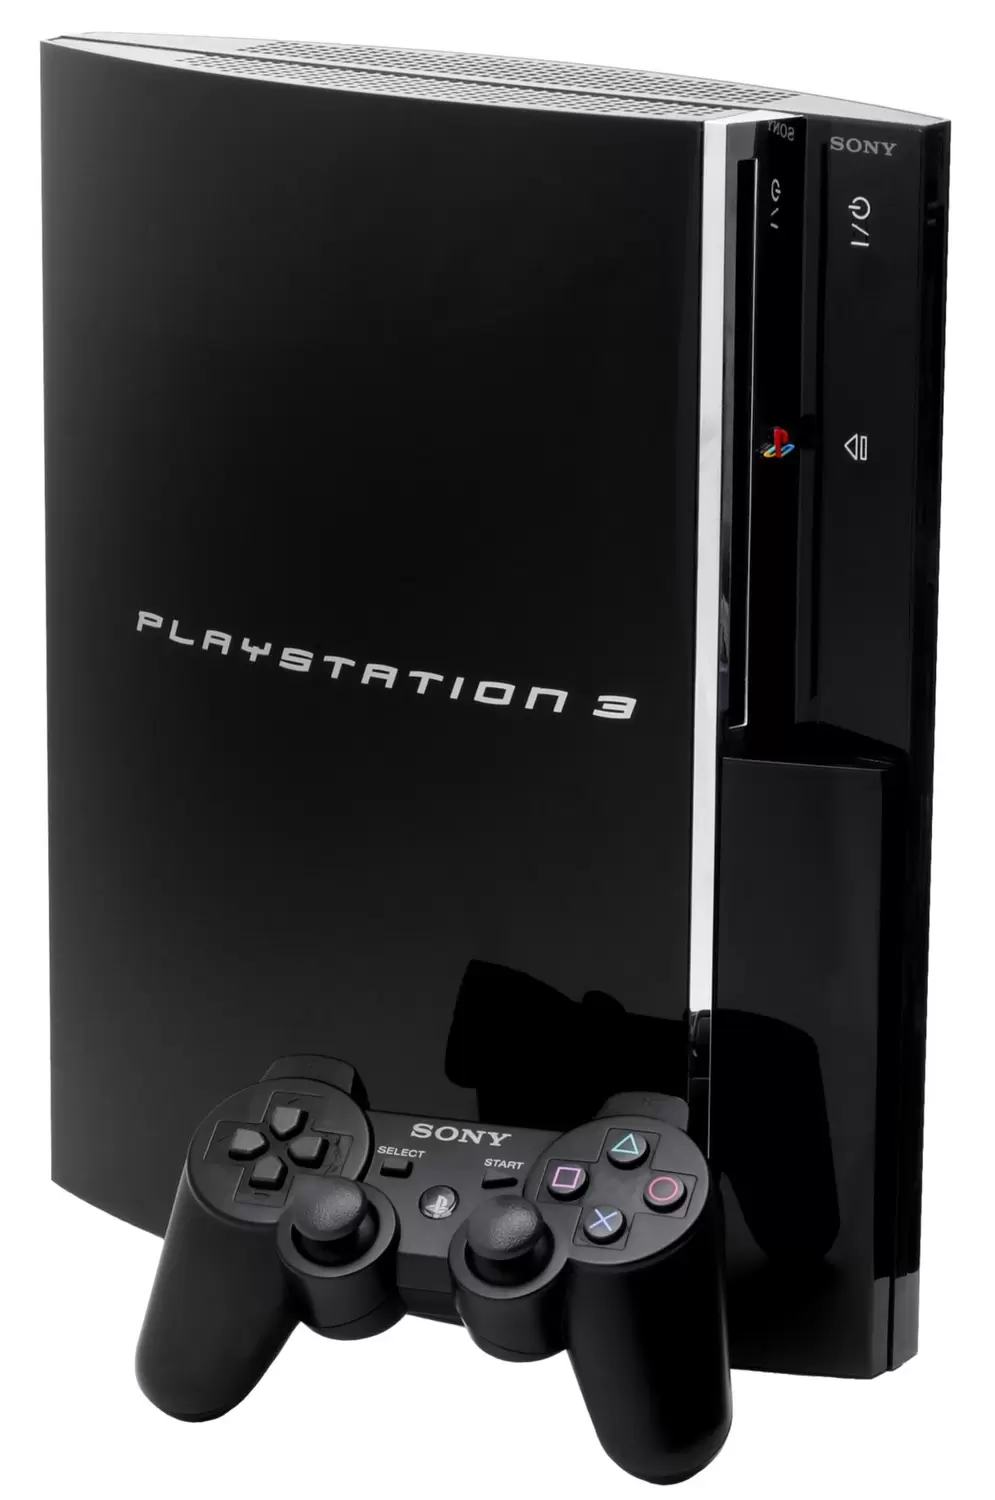 PlayStation 3 stuff - PlayStation 3 Clear Black